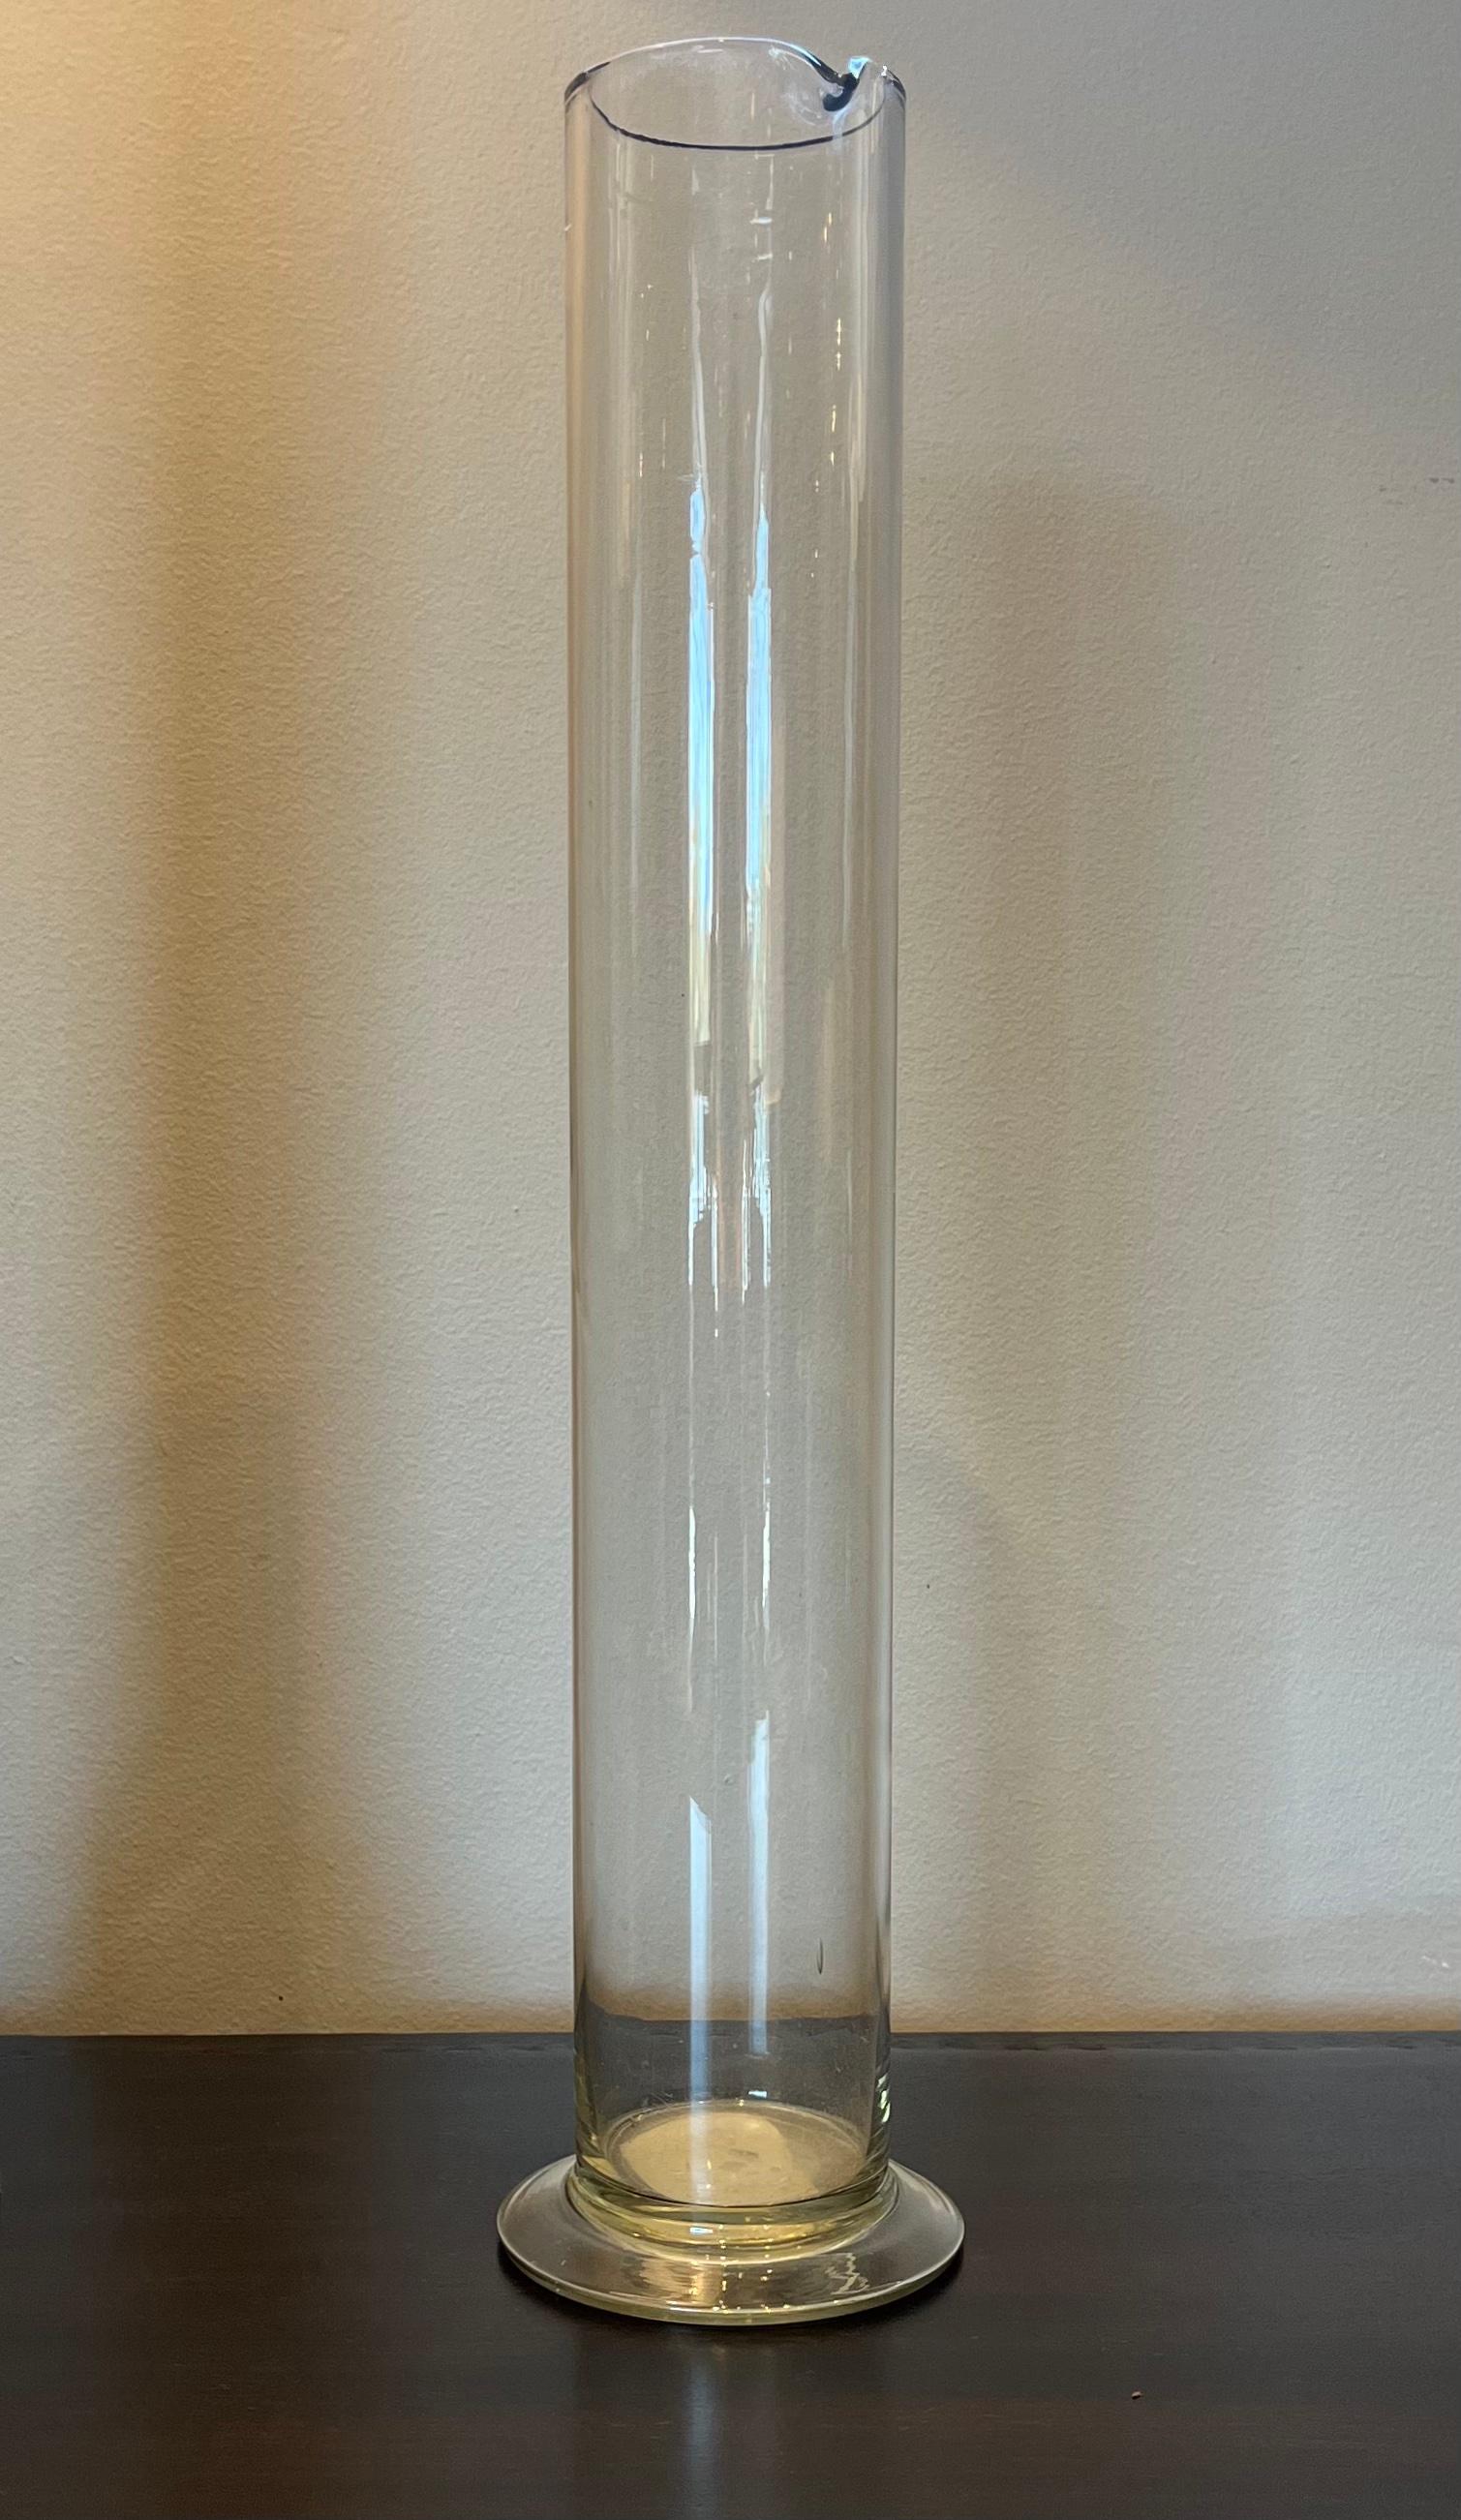 Bécher de chimiste en verre datant de la France des années 1900. Reposant sur une fine base circulaire, le corps cylindrique est couronné d'un bec verseur. Excellent exemple d'un appareil scientifique ancien, ce récipient peut être utilisé comme